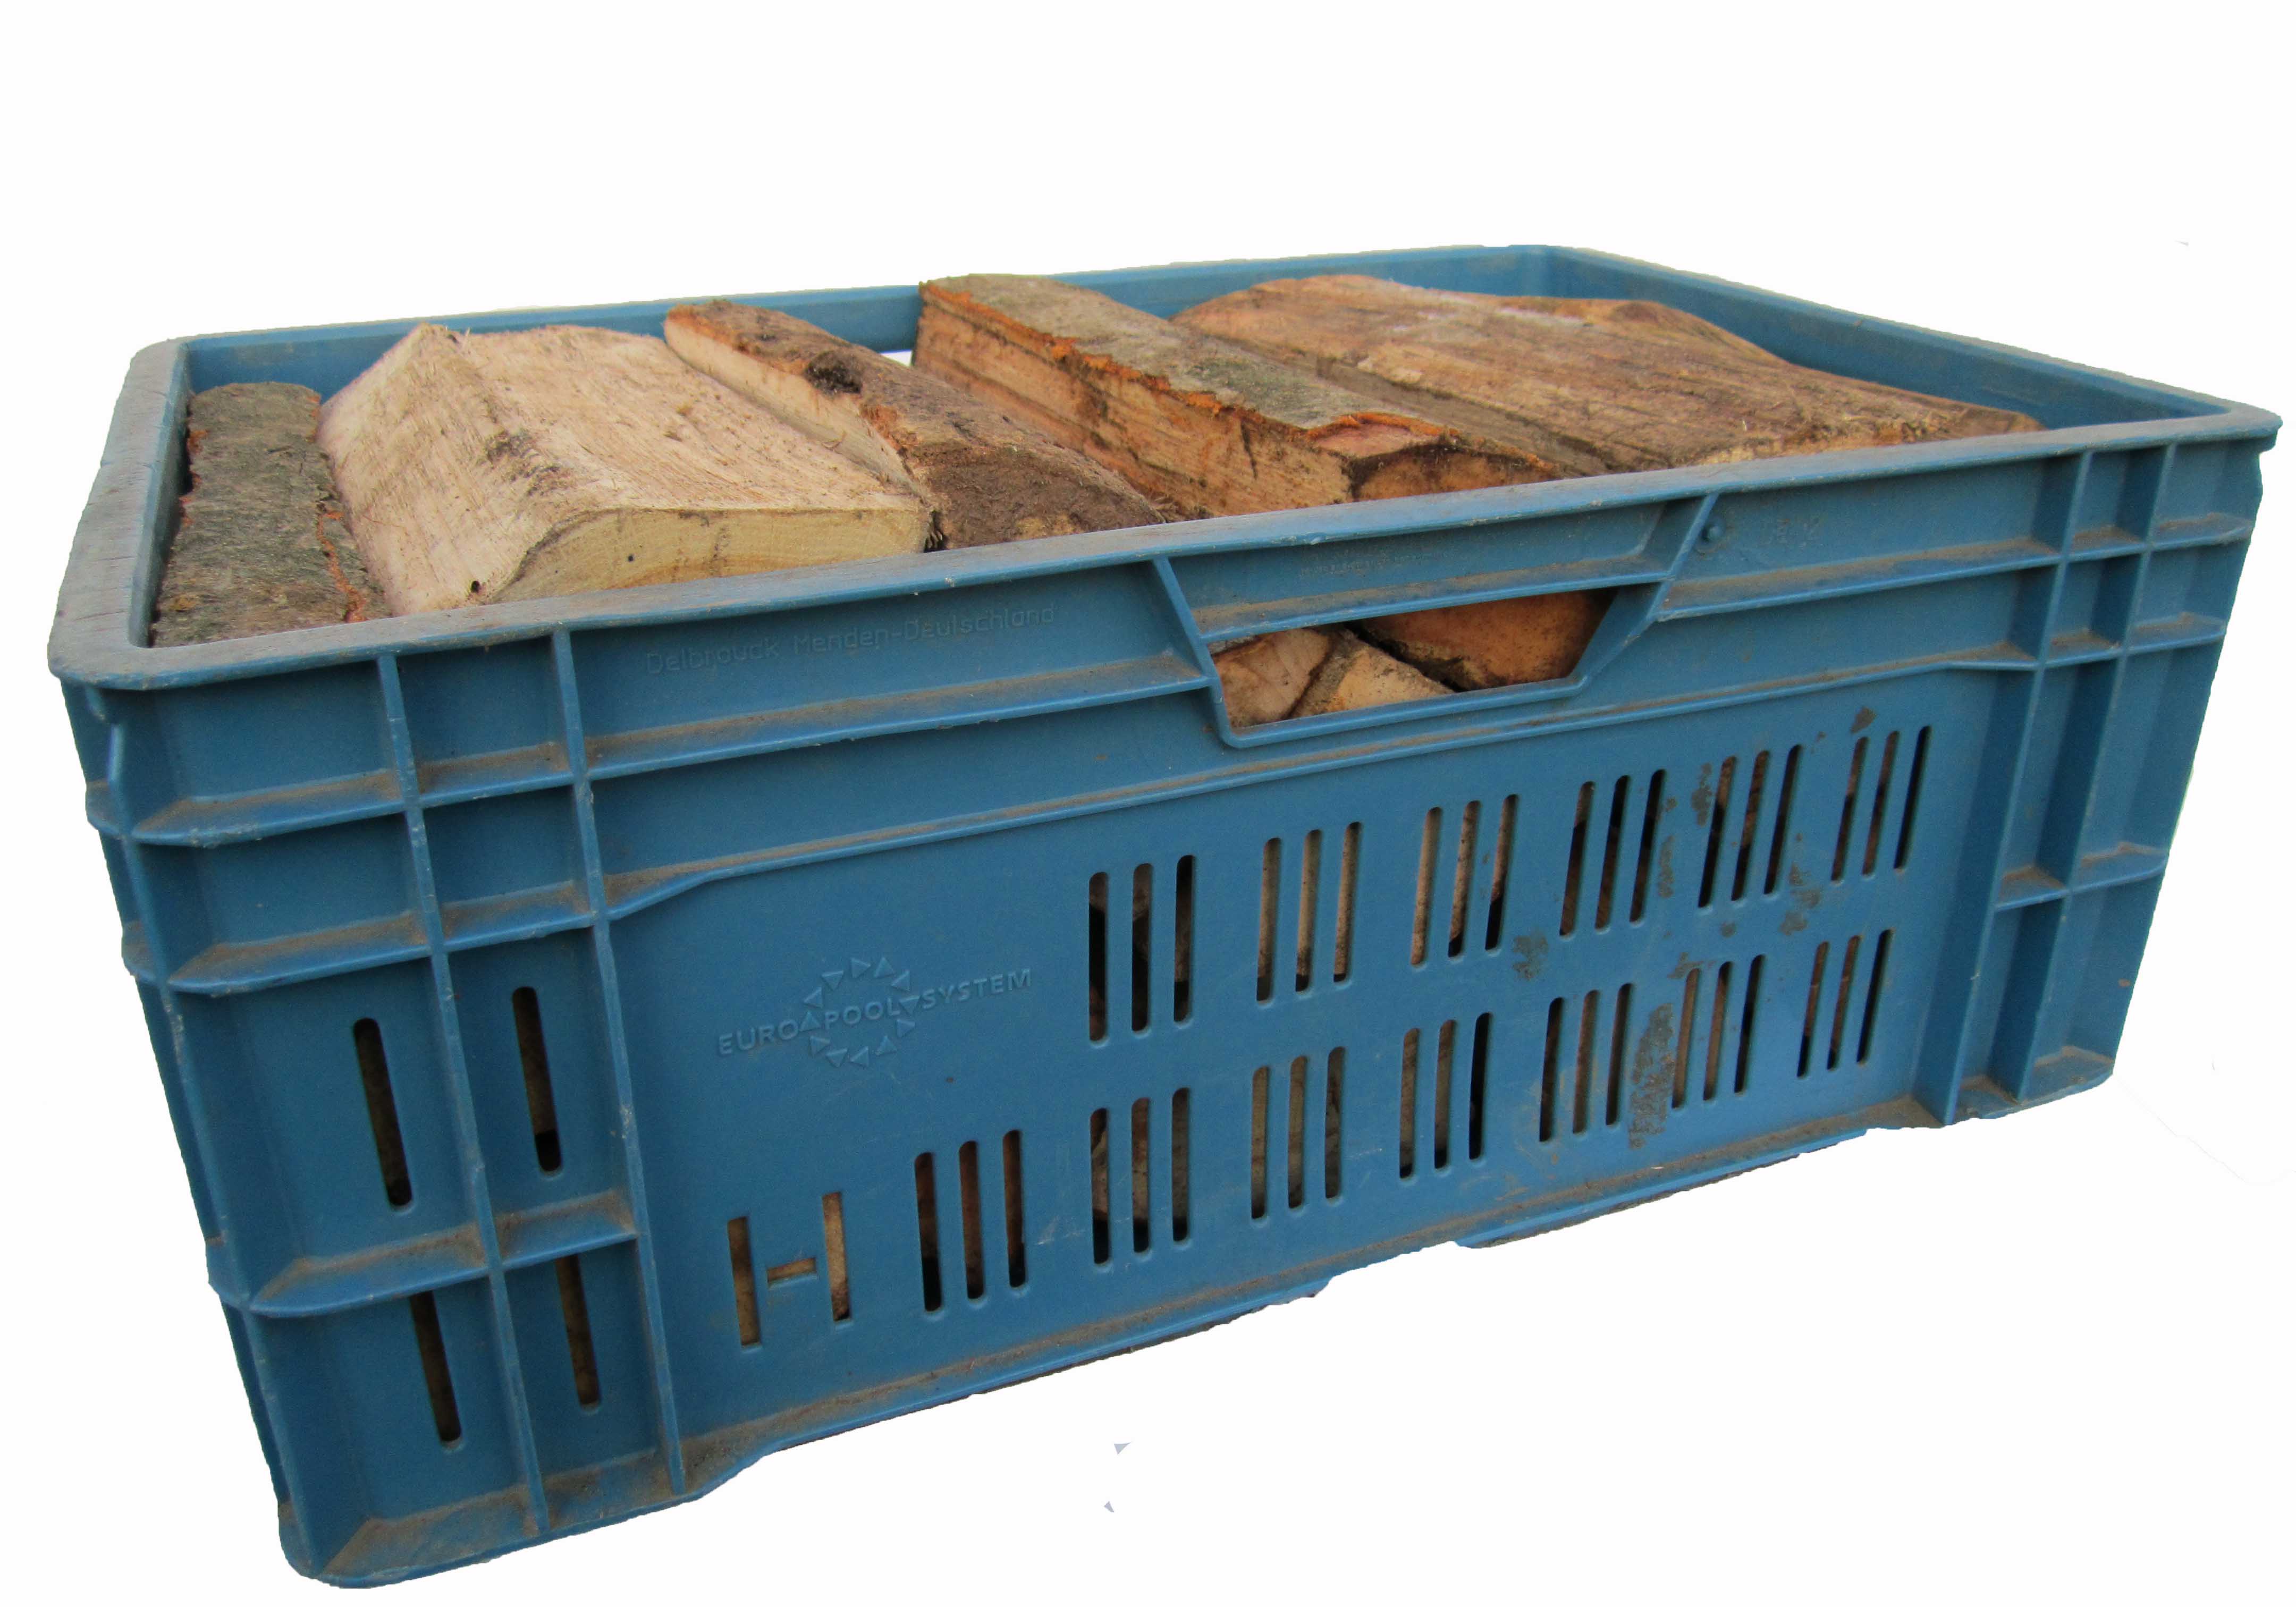 Zafido bukové palivové dřevo - 30-35 cm skládané- v přepravkách - 1 přepravka